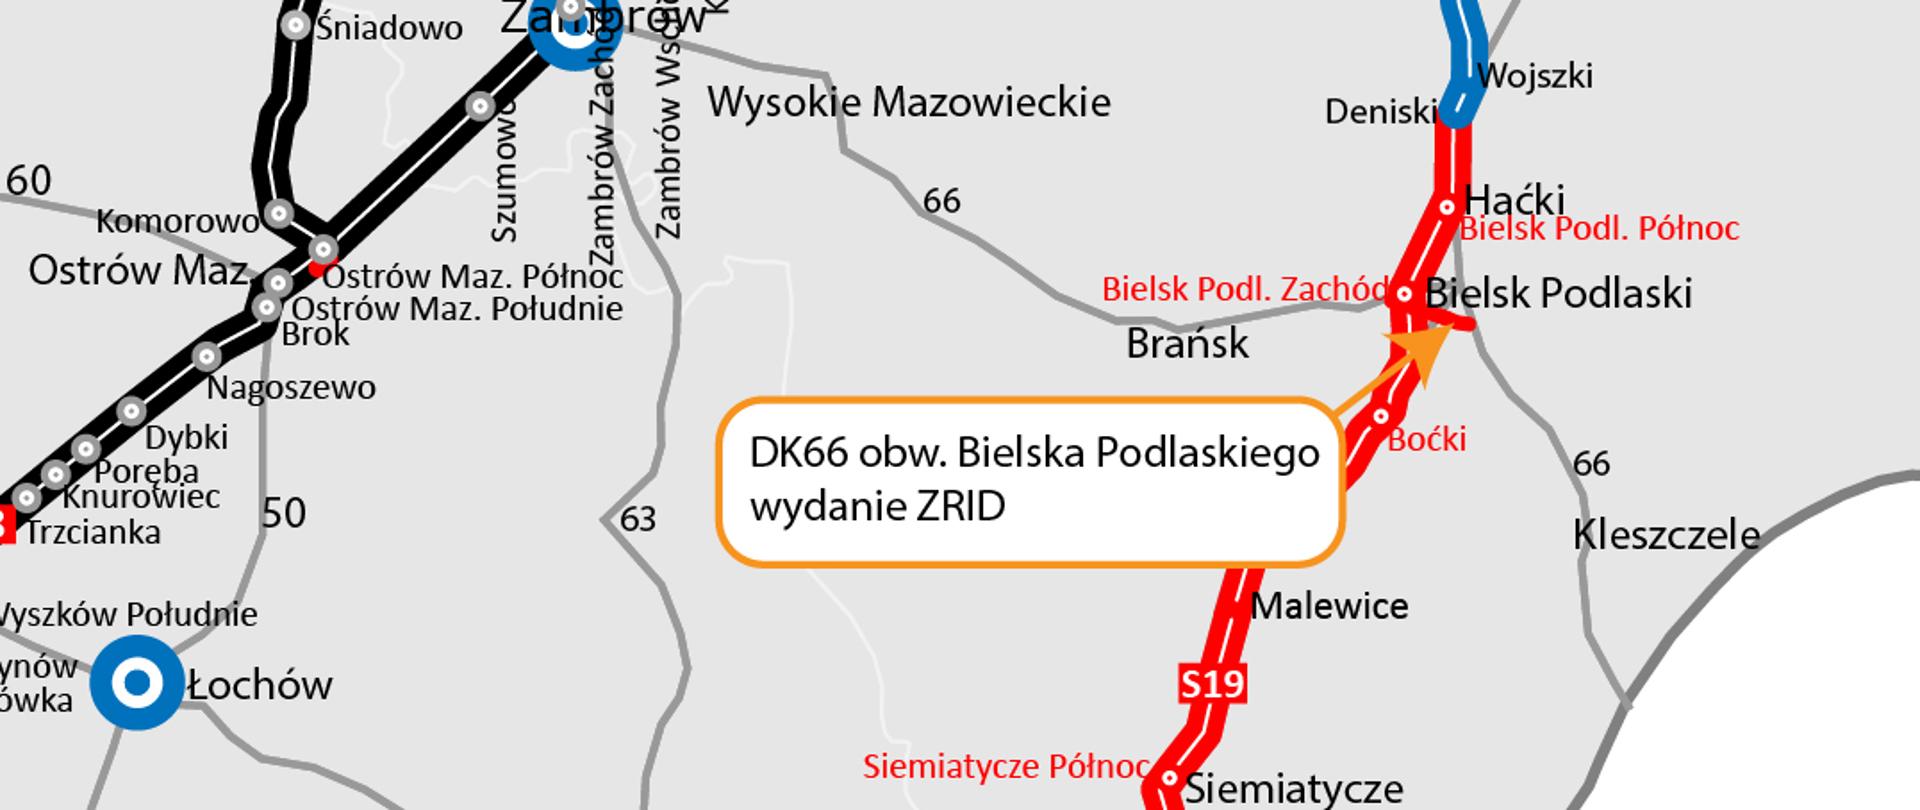 Mapka pokazująca układ dróg w regonie północno-wschodniej Polski ze wskazaniem miejsca gdzie będzie budowana obwodnica Bielska Podlaskiego